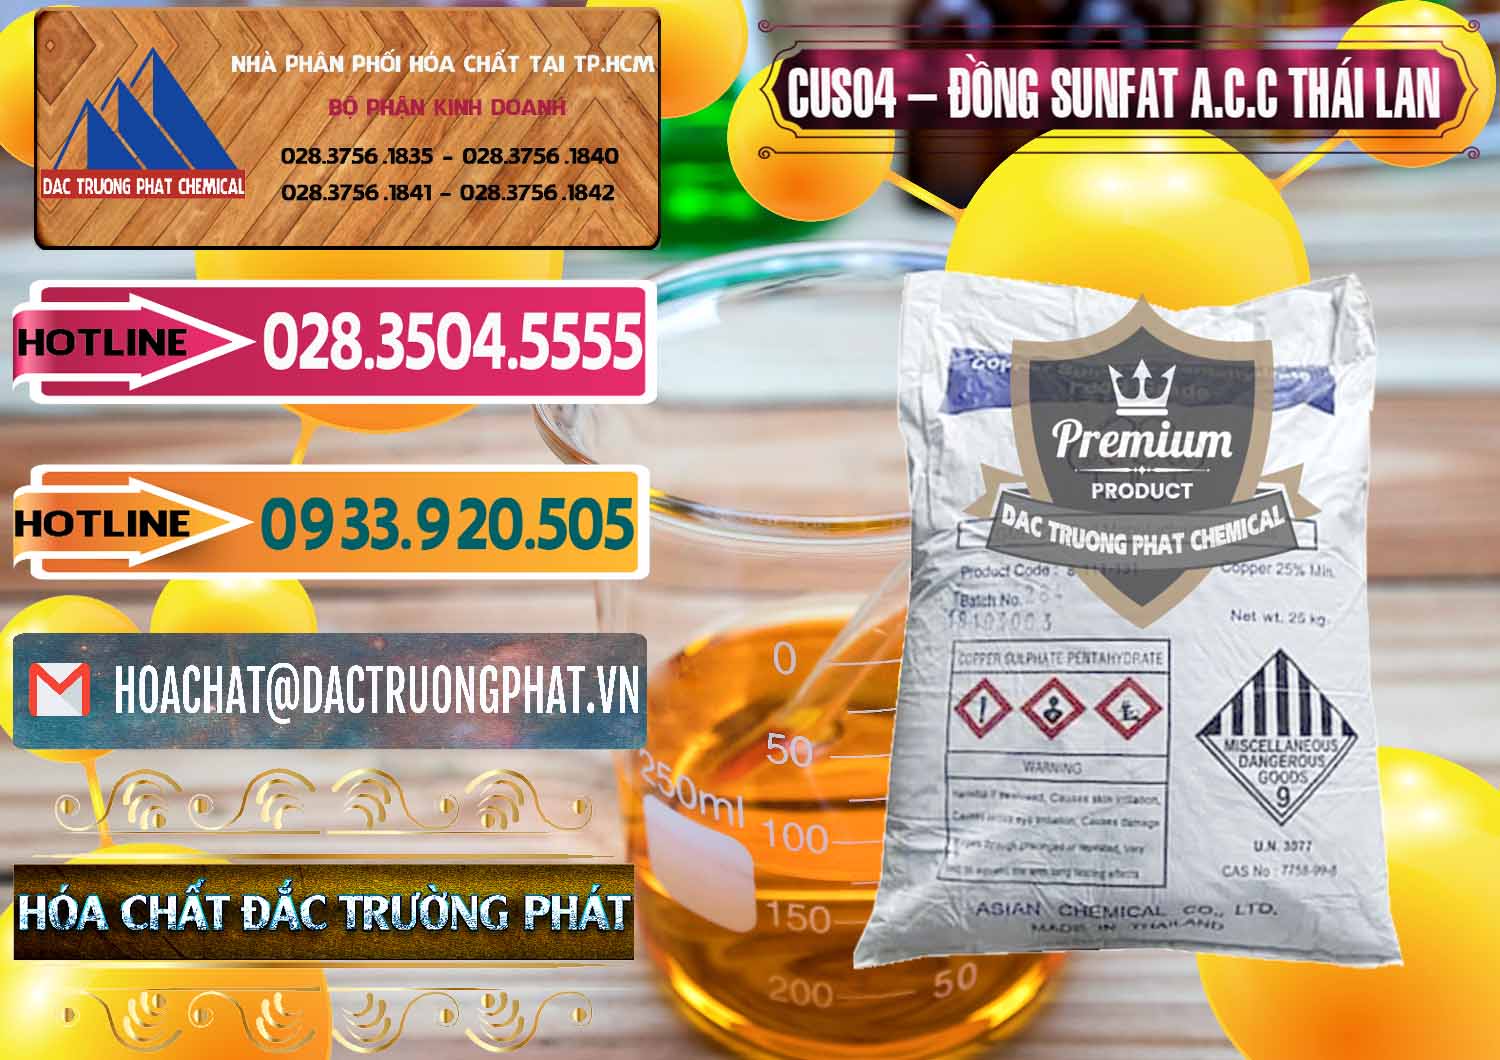 Cty chuyên bán và cung cấp CuSO4 – Đồng Sunfat A.C.C Thái Lan - 0249 - Đơn vị chuyên nhập khẩu _ cung cấp hóa chất tại TP.HCM - dactruongphat.vn